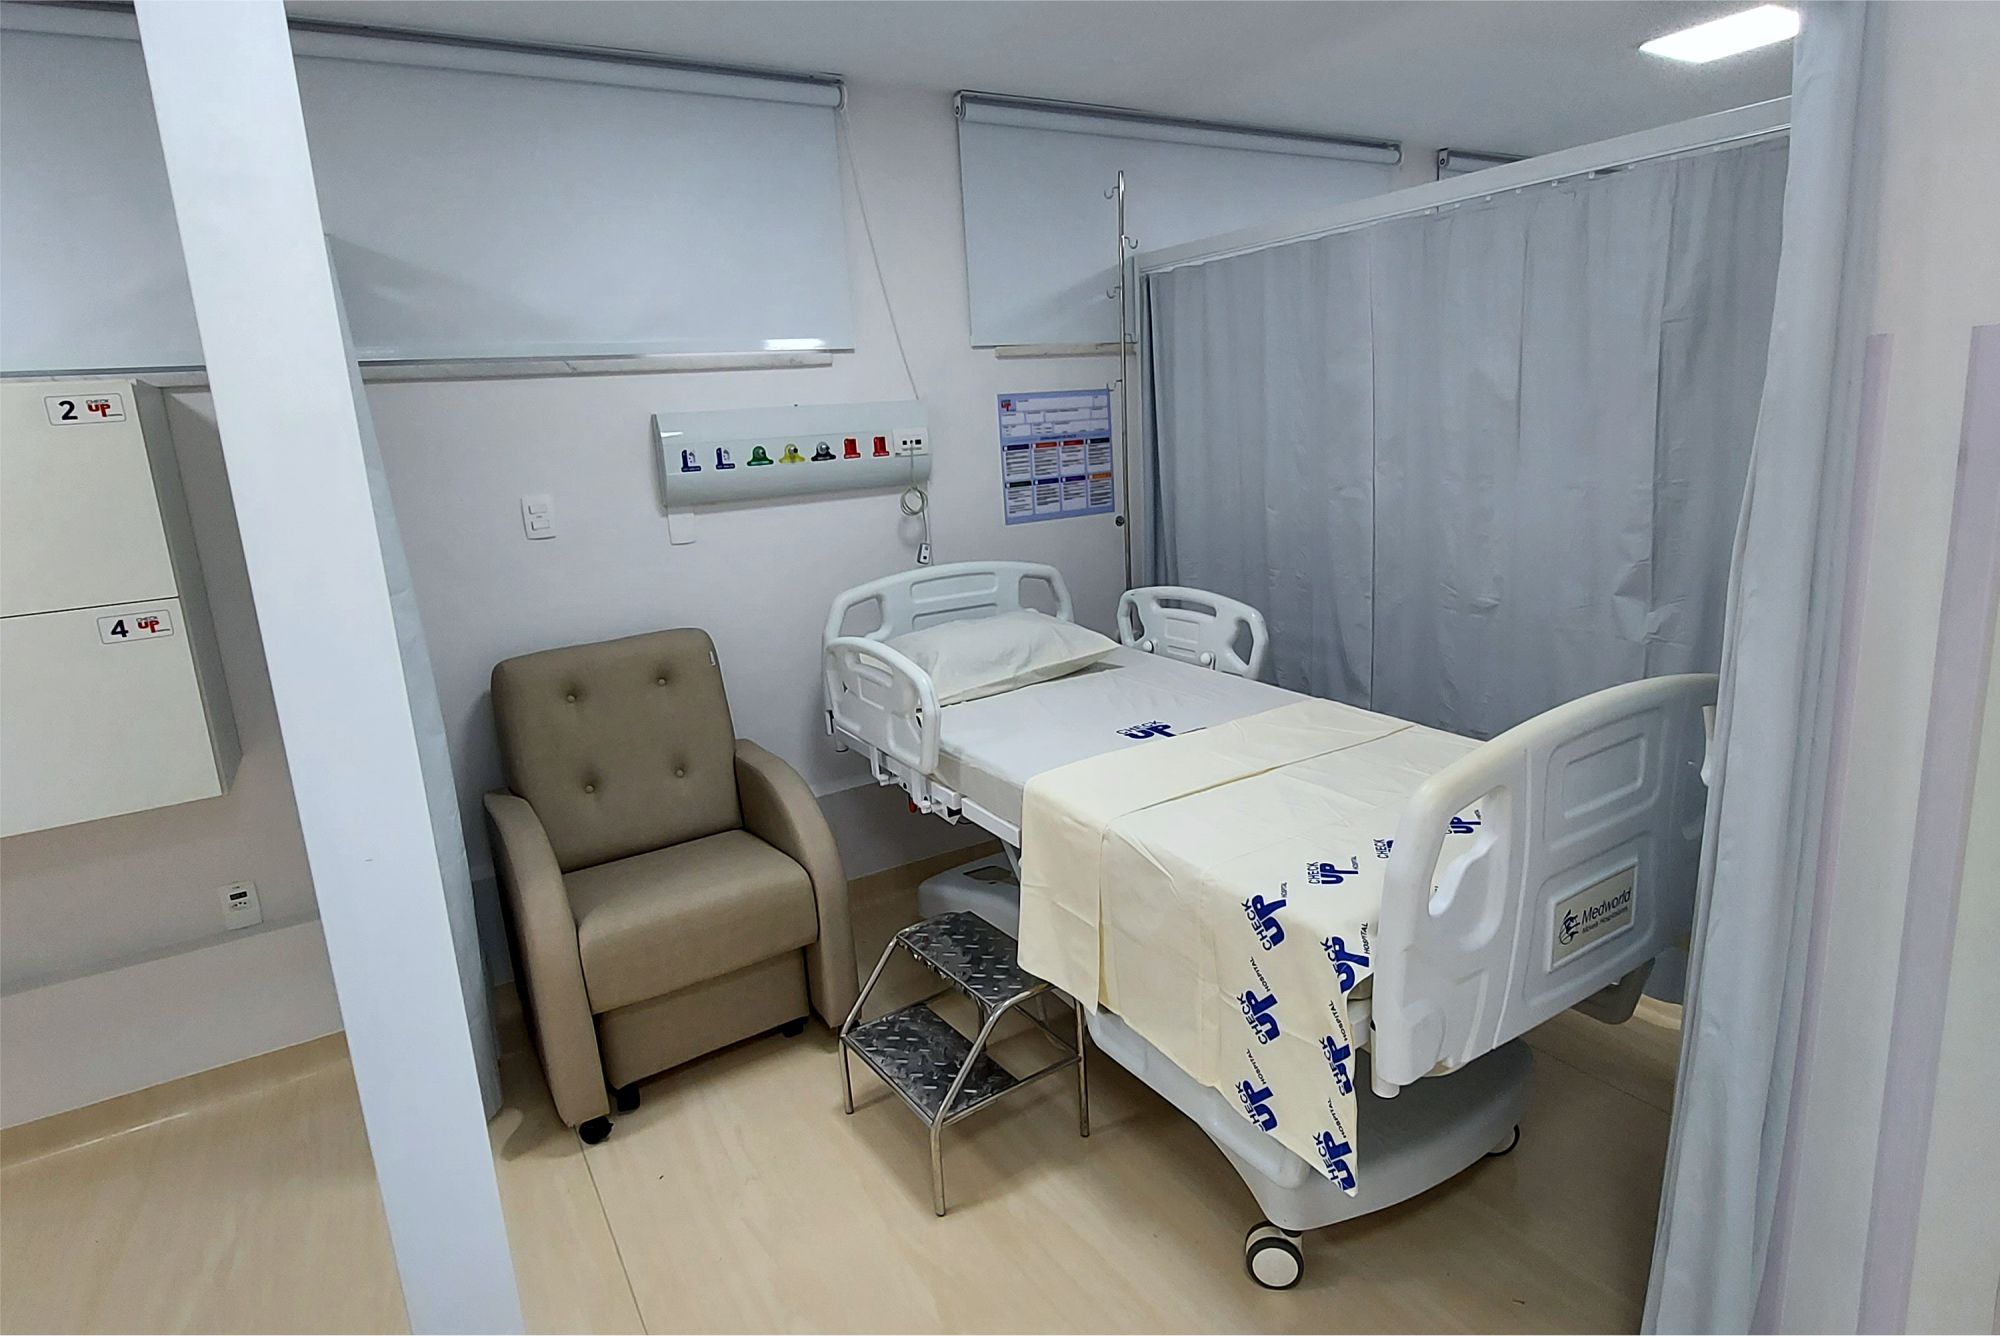 Foto de leito em enfermaria para internação de pacientes, com conforto e privacidade.